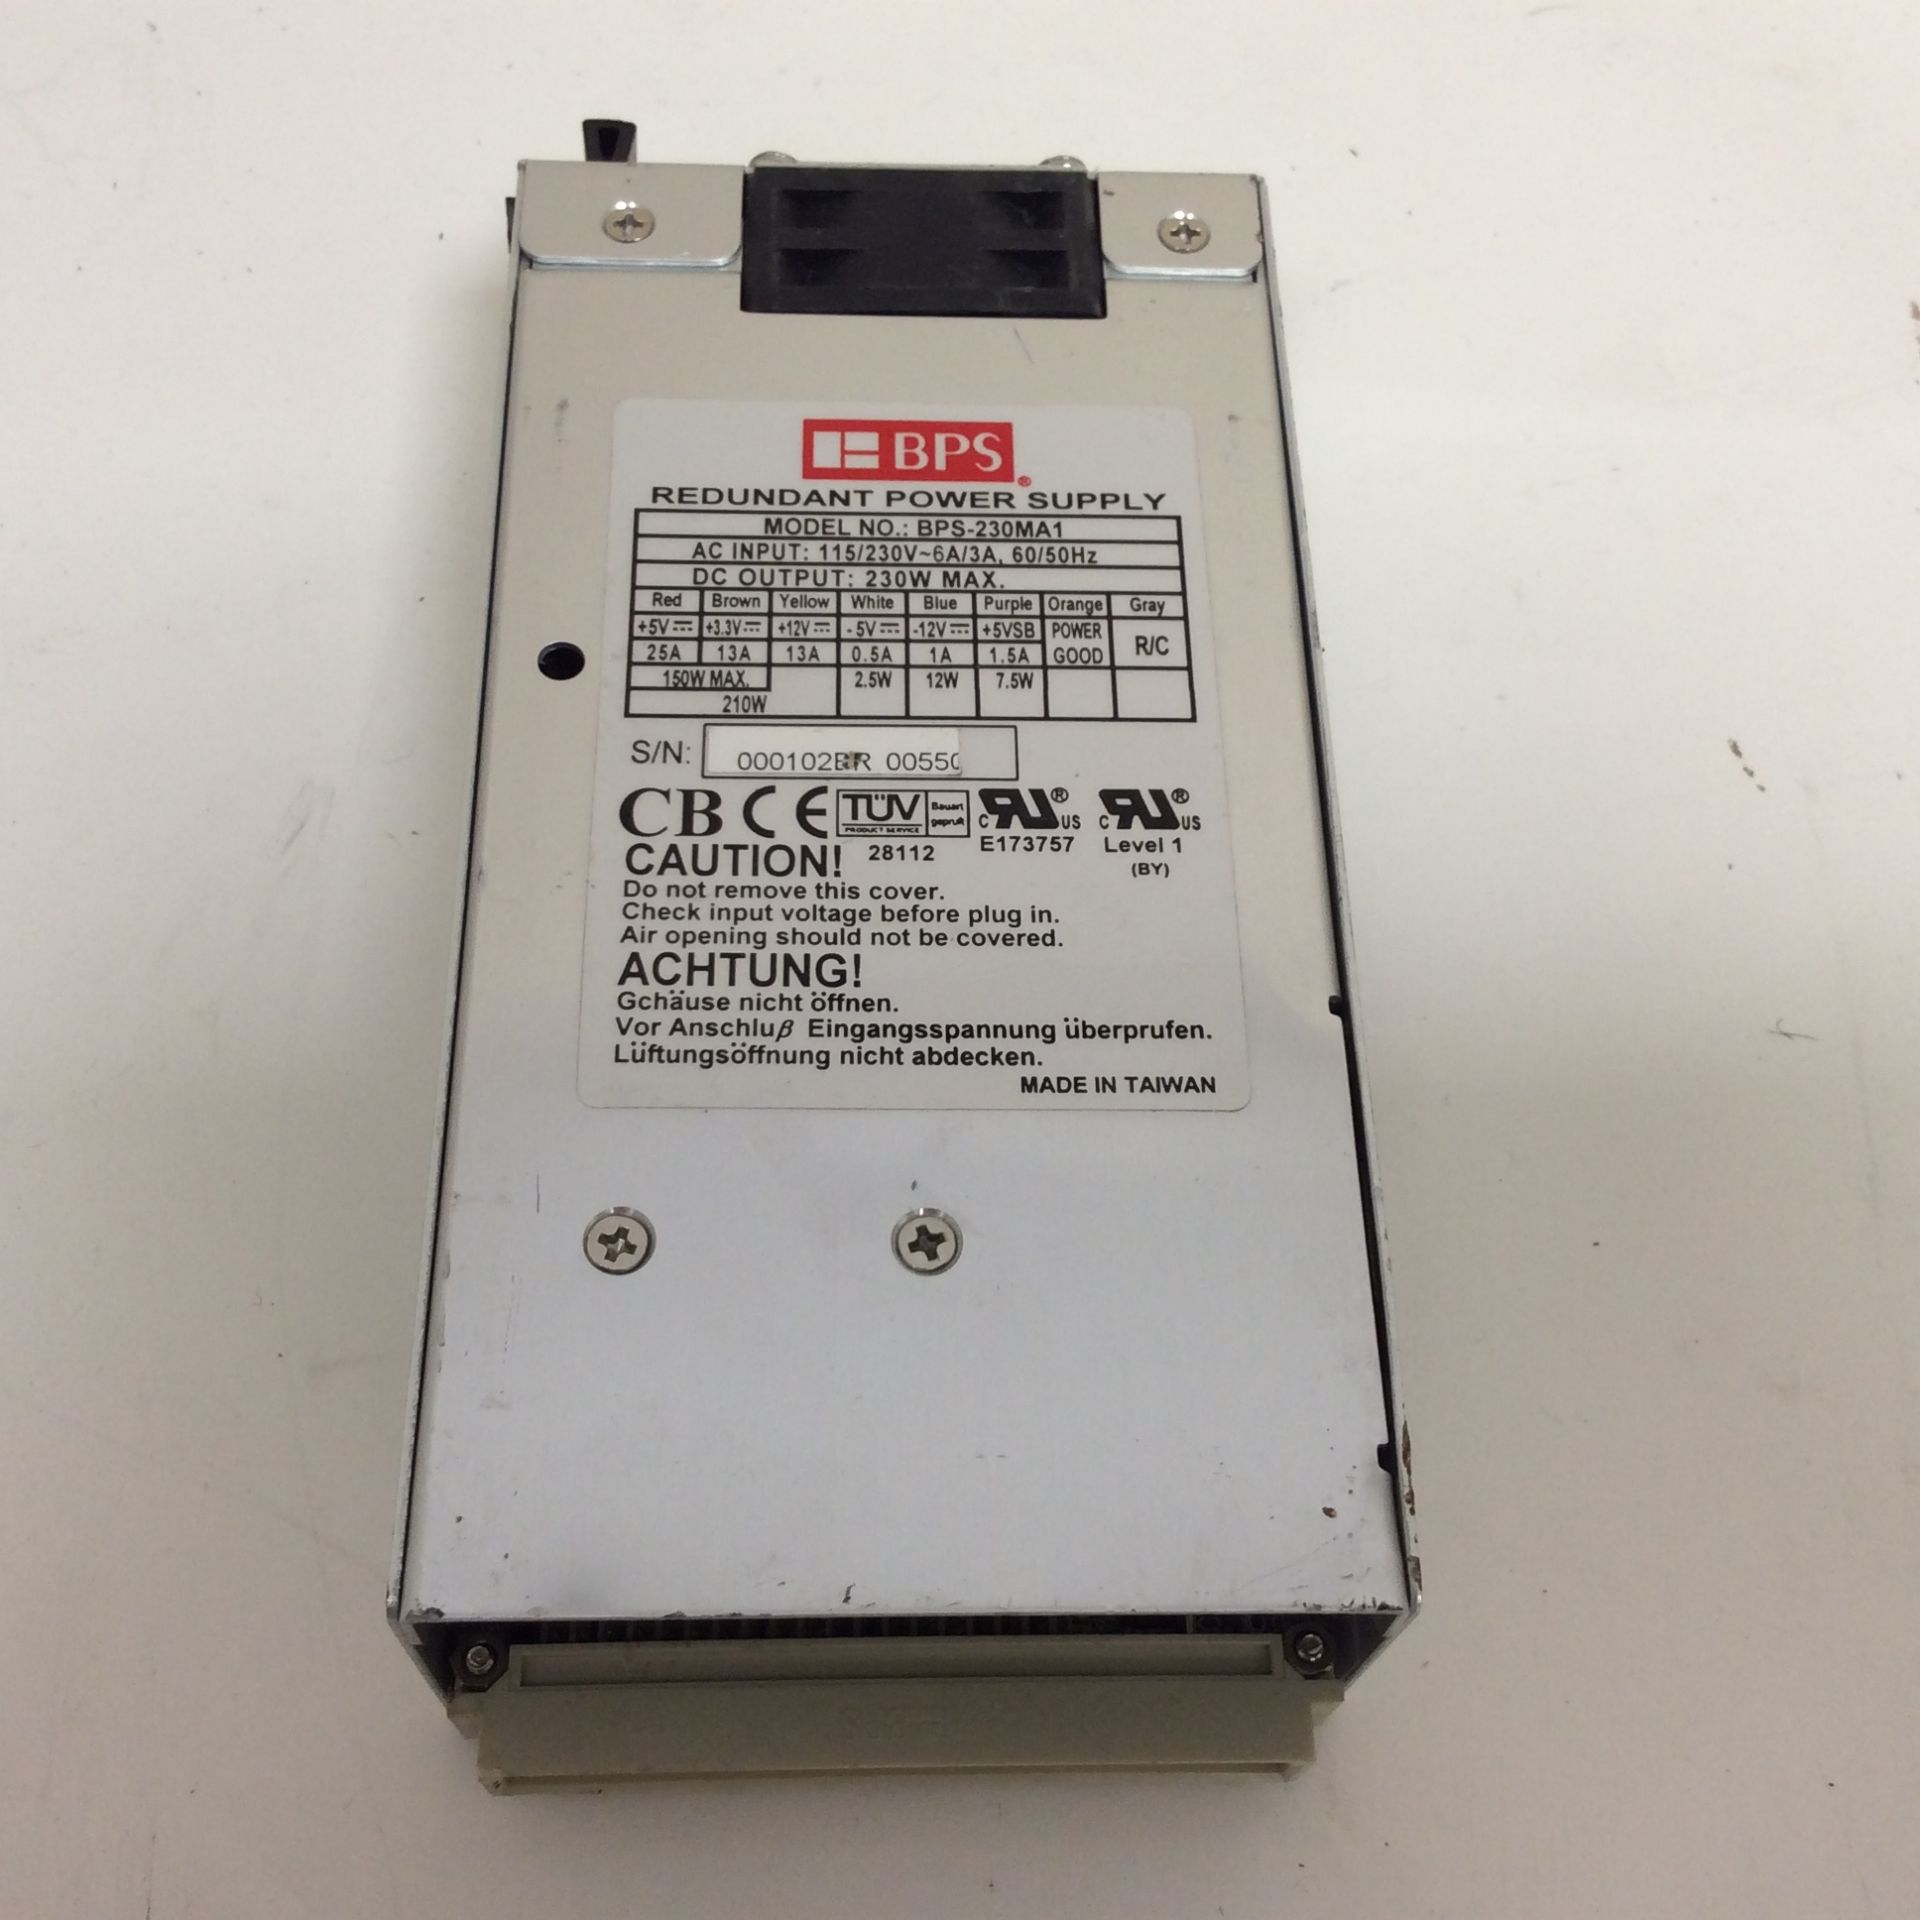 Bps redundant power supply - modle bps-230ma1